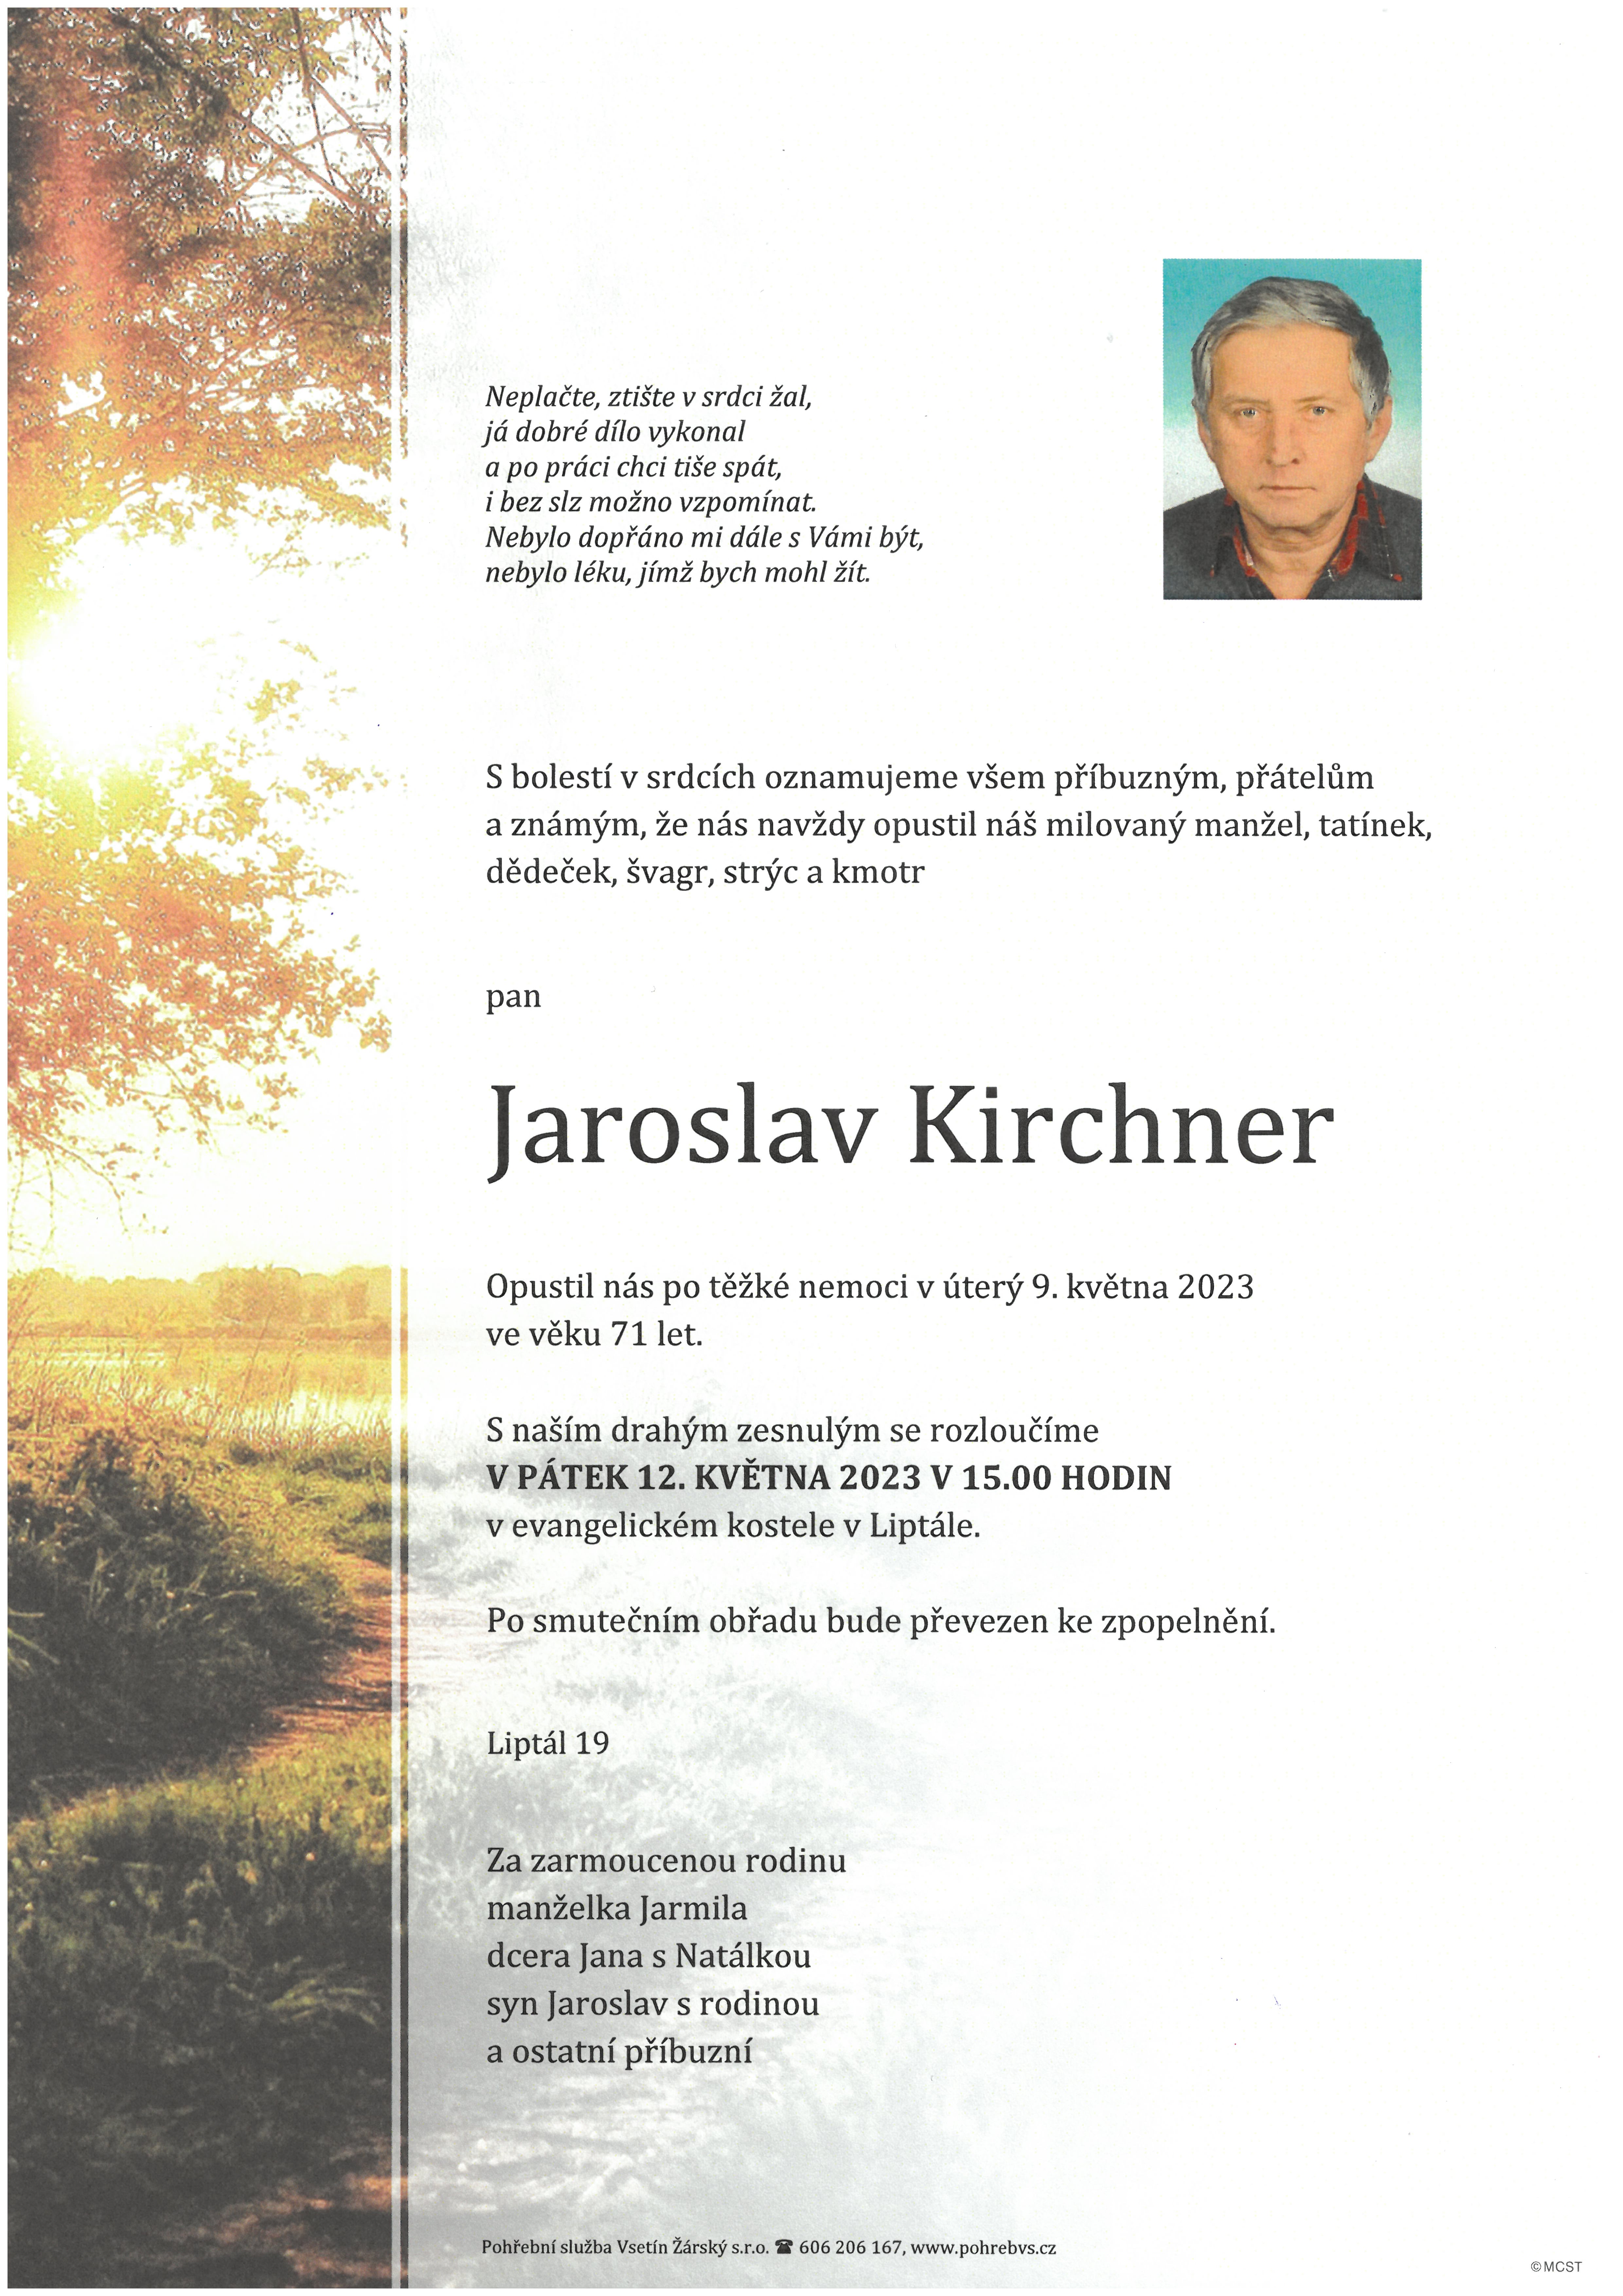 Jaroslav Kirchner